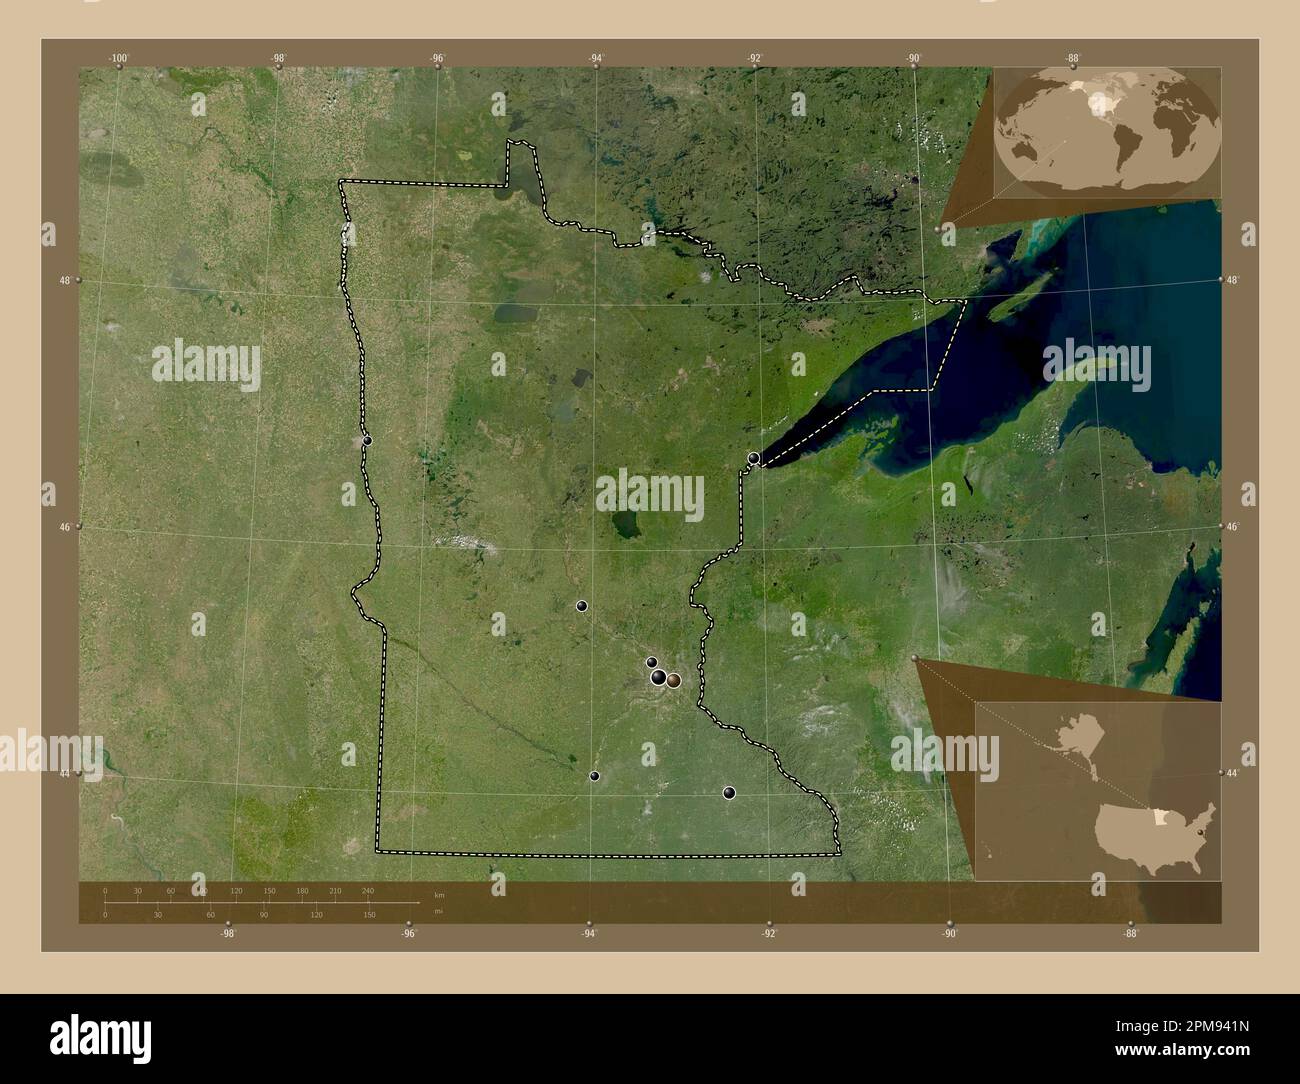 Minnesota, Bundesstaat der Vereinigten Staaten von Amerika. Satellitenkarte mit niedriger Auflösung. Standorte der wichtigsten Städte der Region. Eckkarten für zusätzliche Standorte Stockfoto